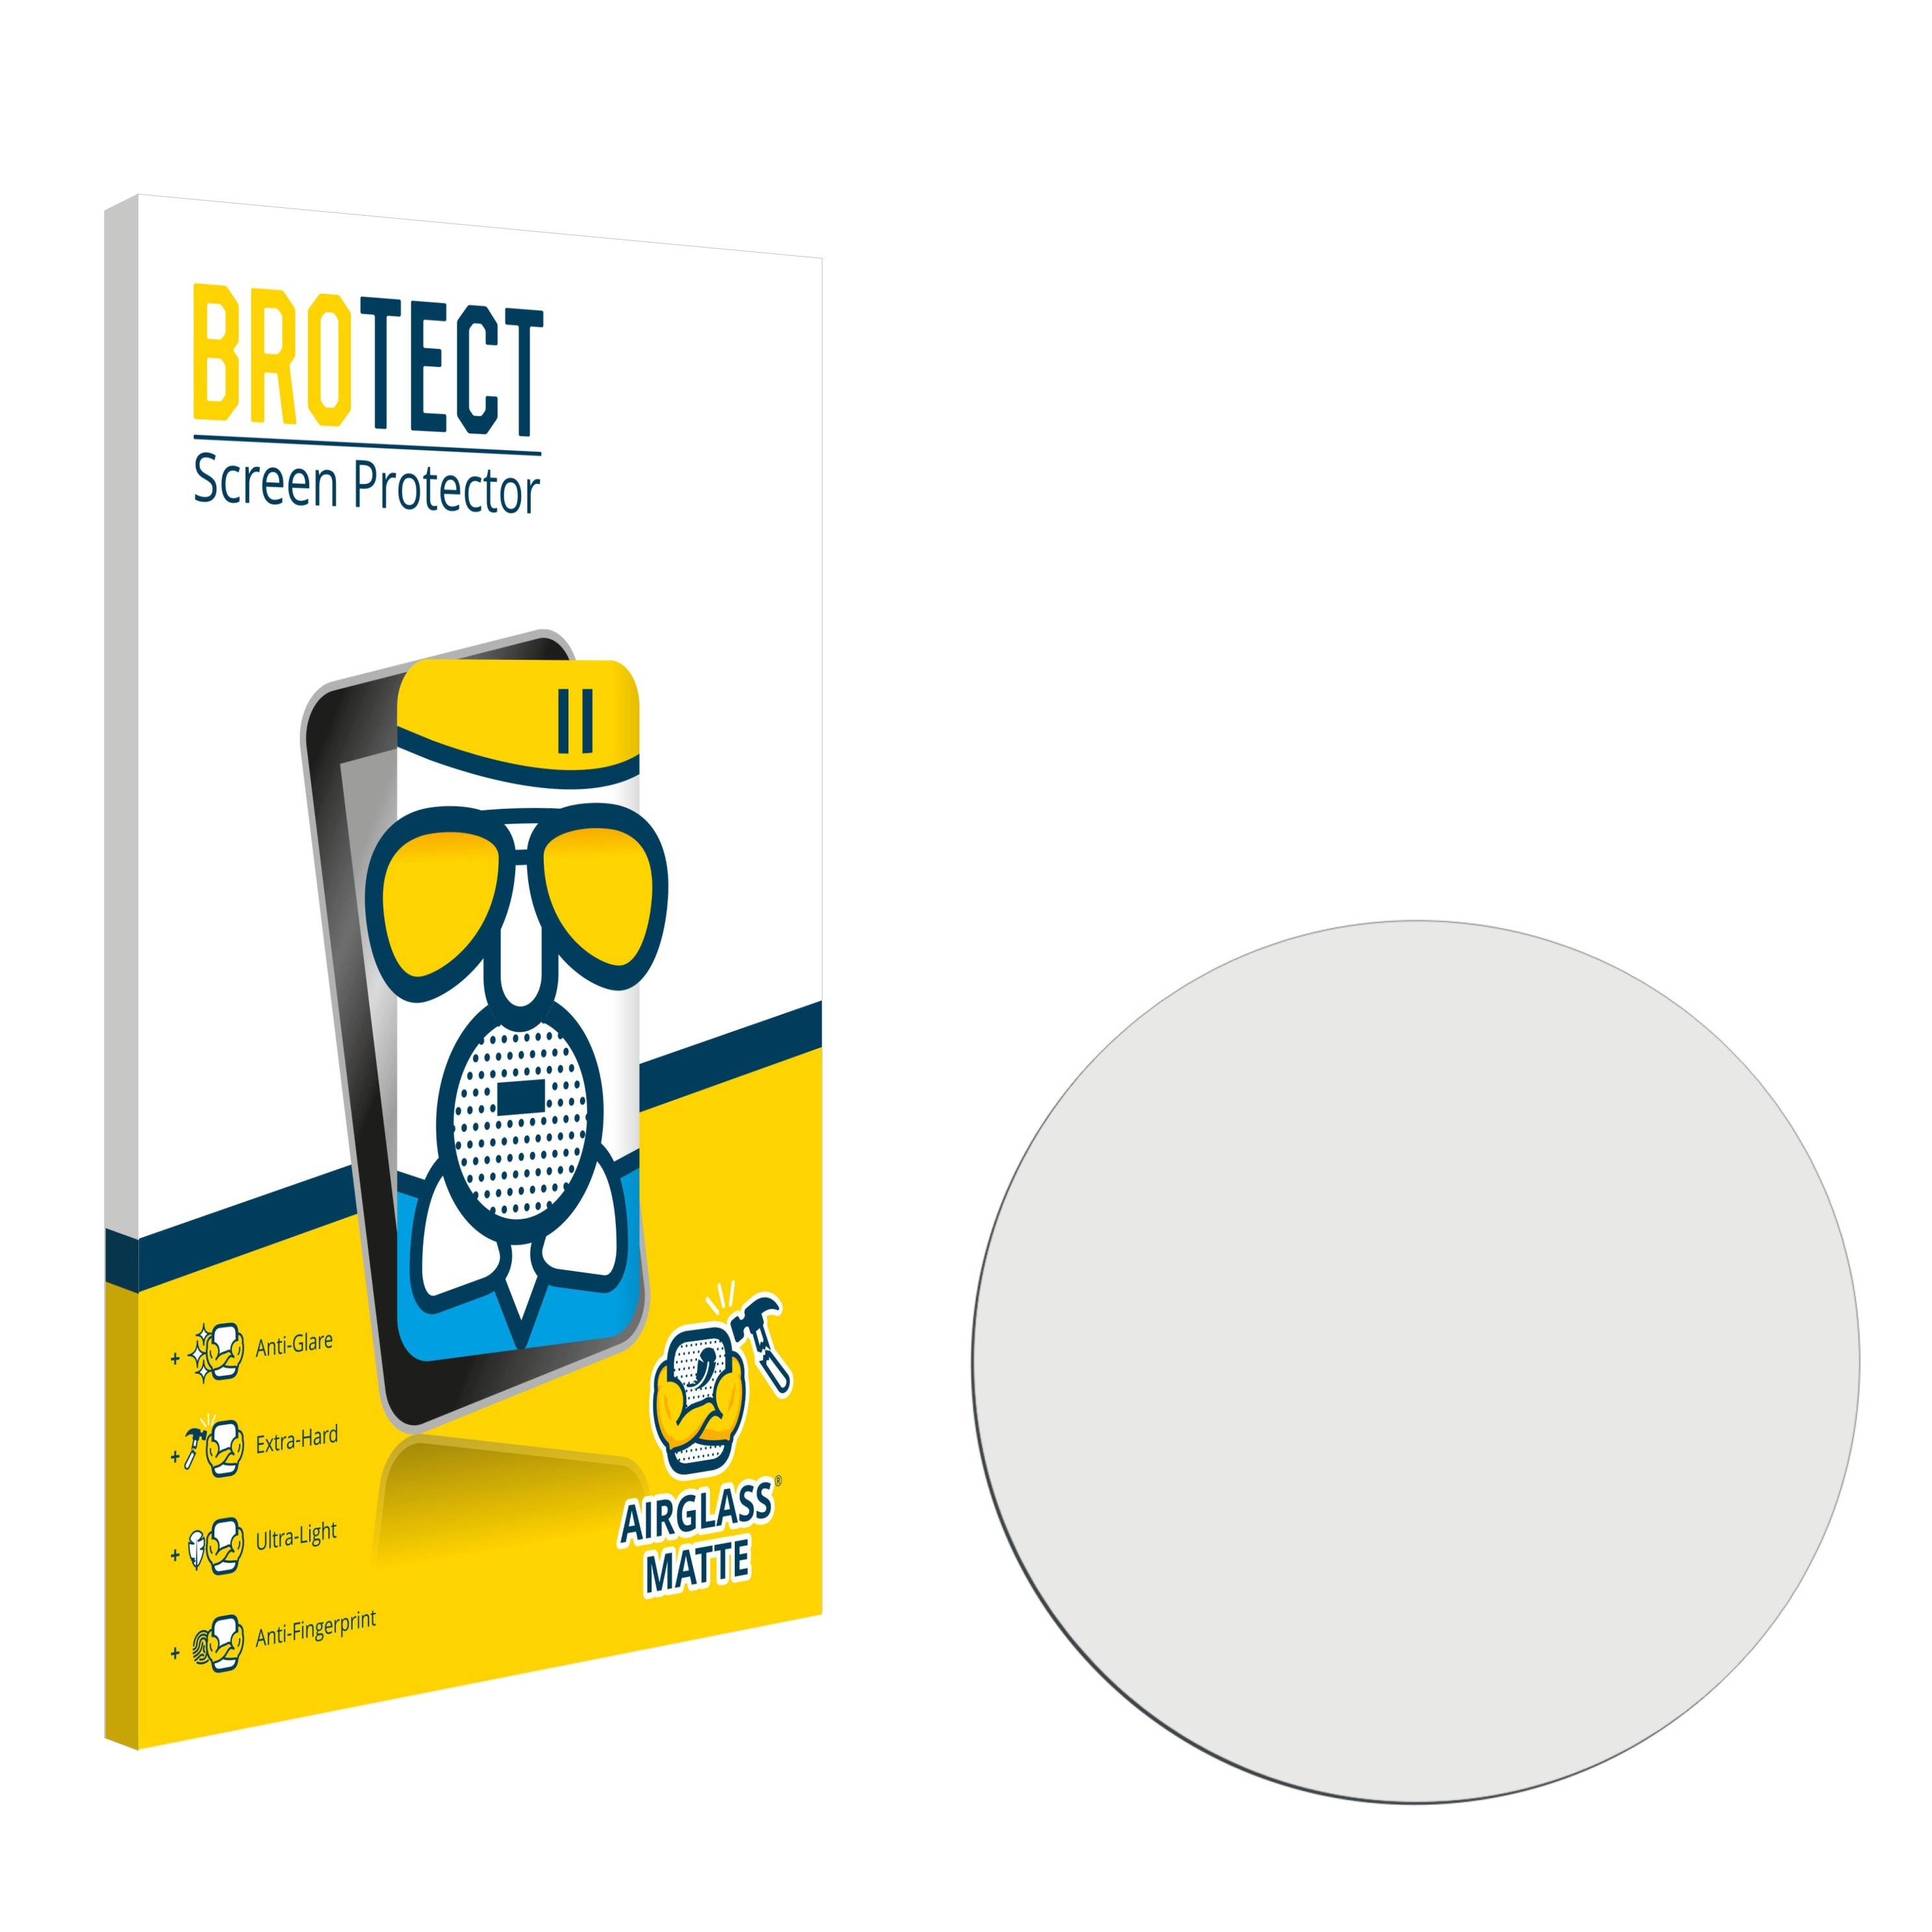 BROTECT Garmin matte Forerunner Airglass 55) Schutzfolie(für